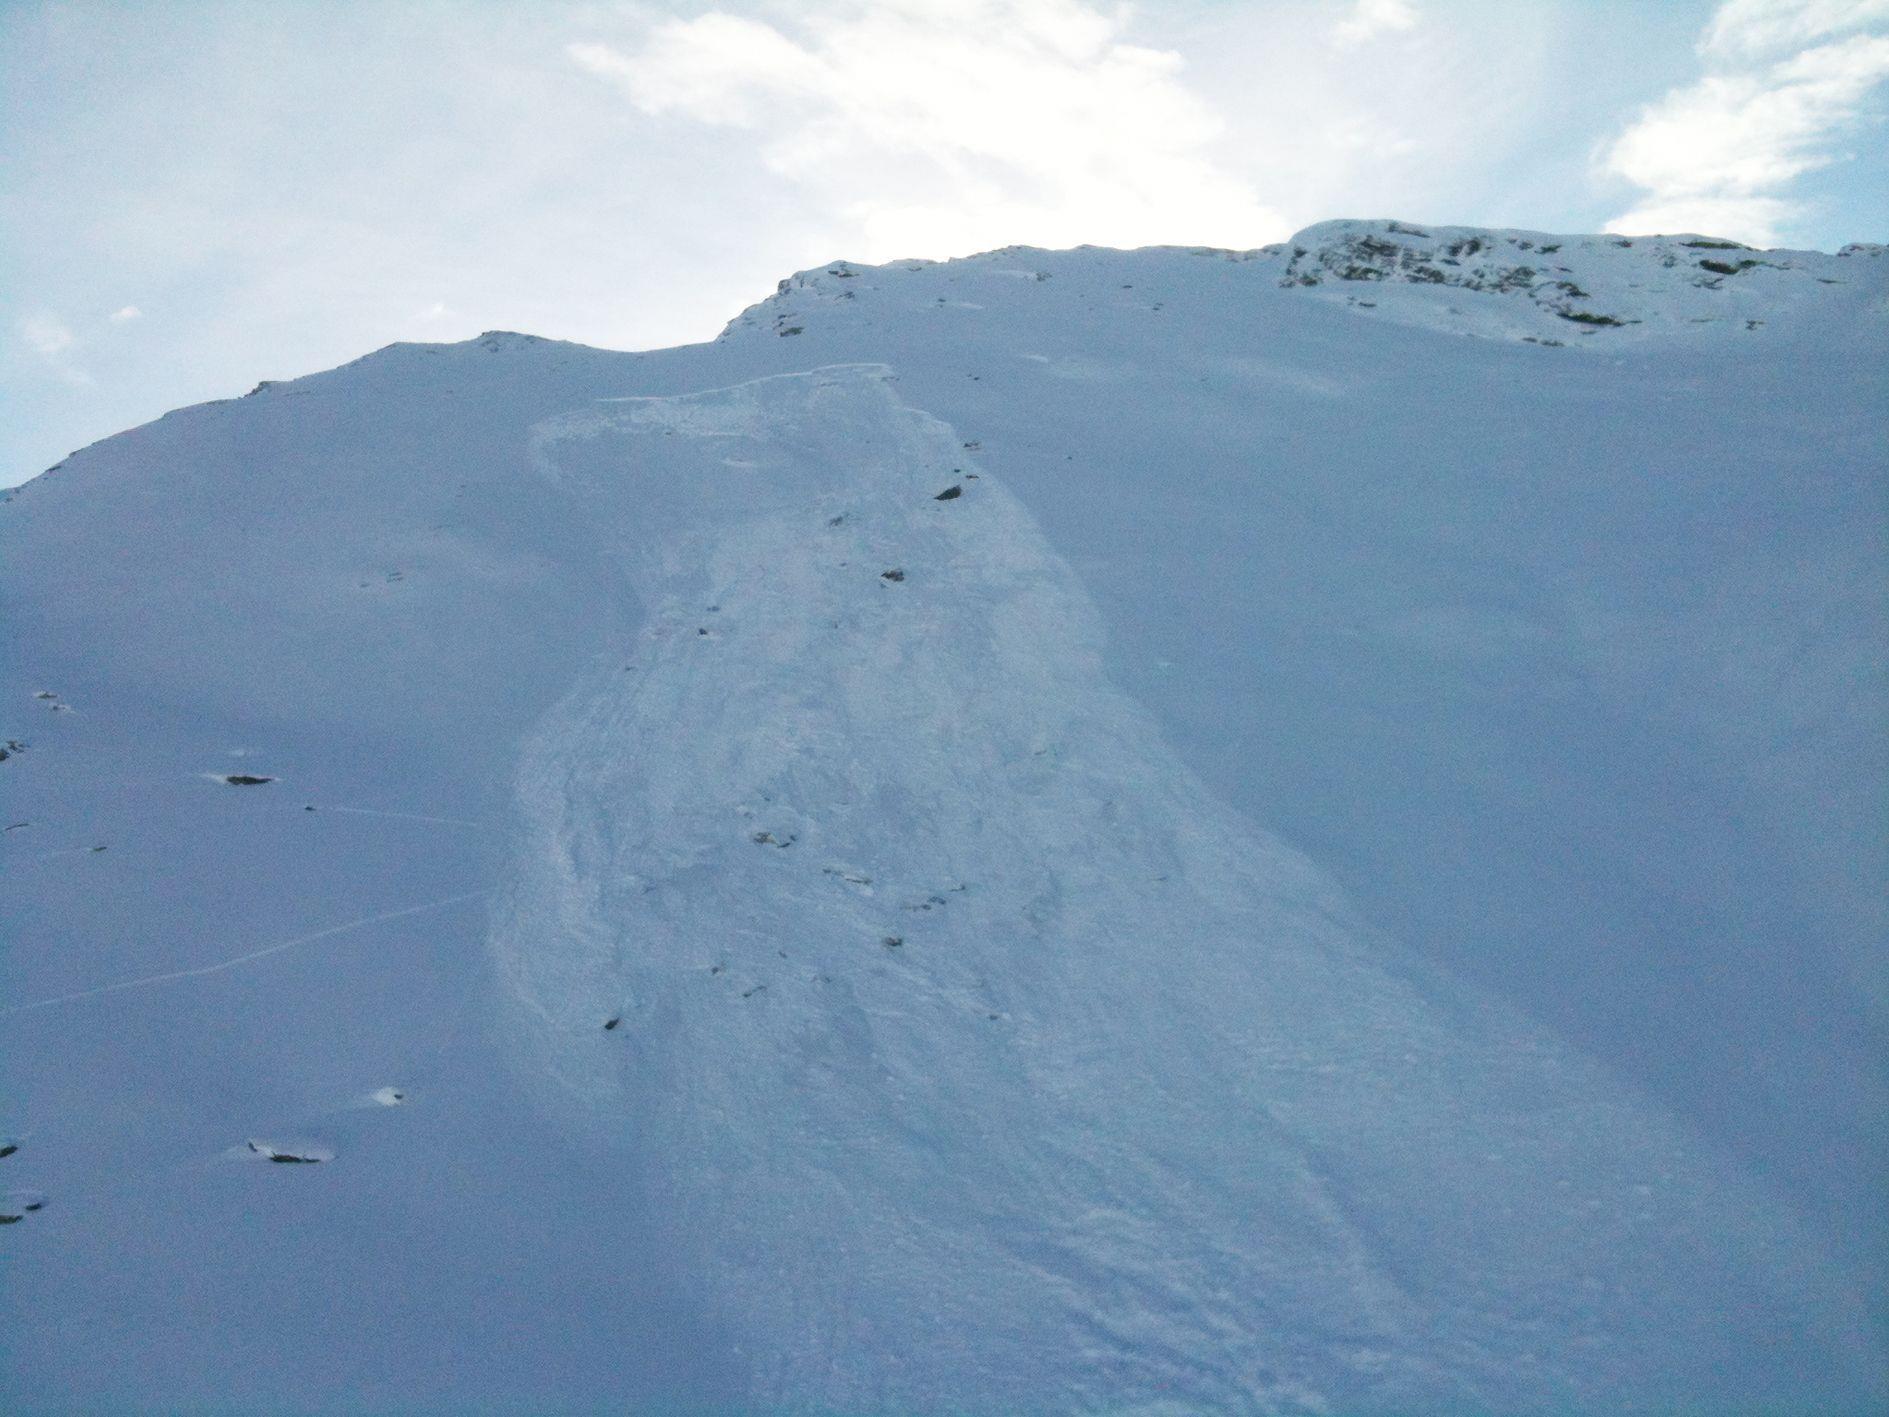 Tourengeher in Graubünden von Schneebrett verschüttet